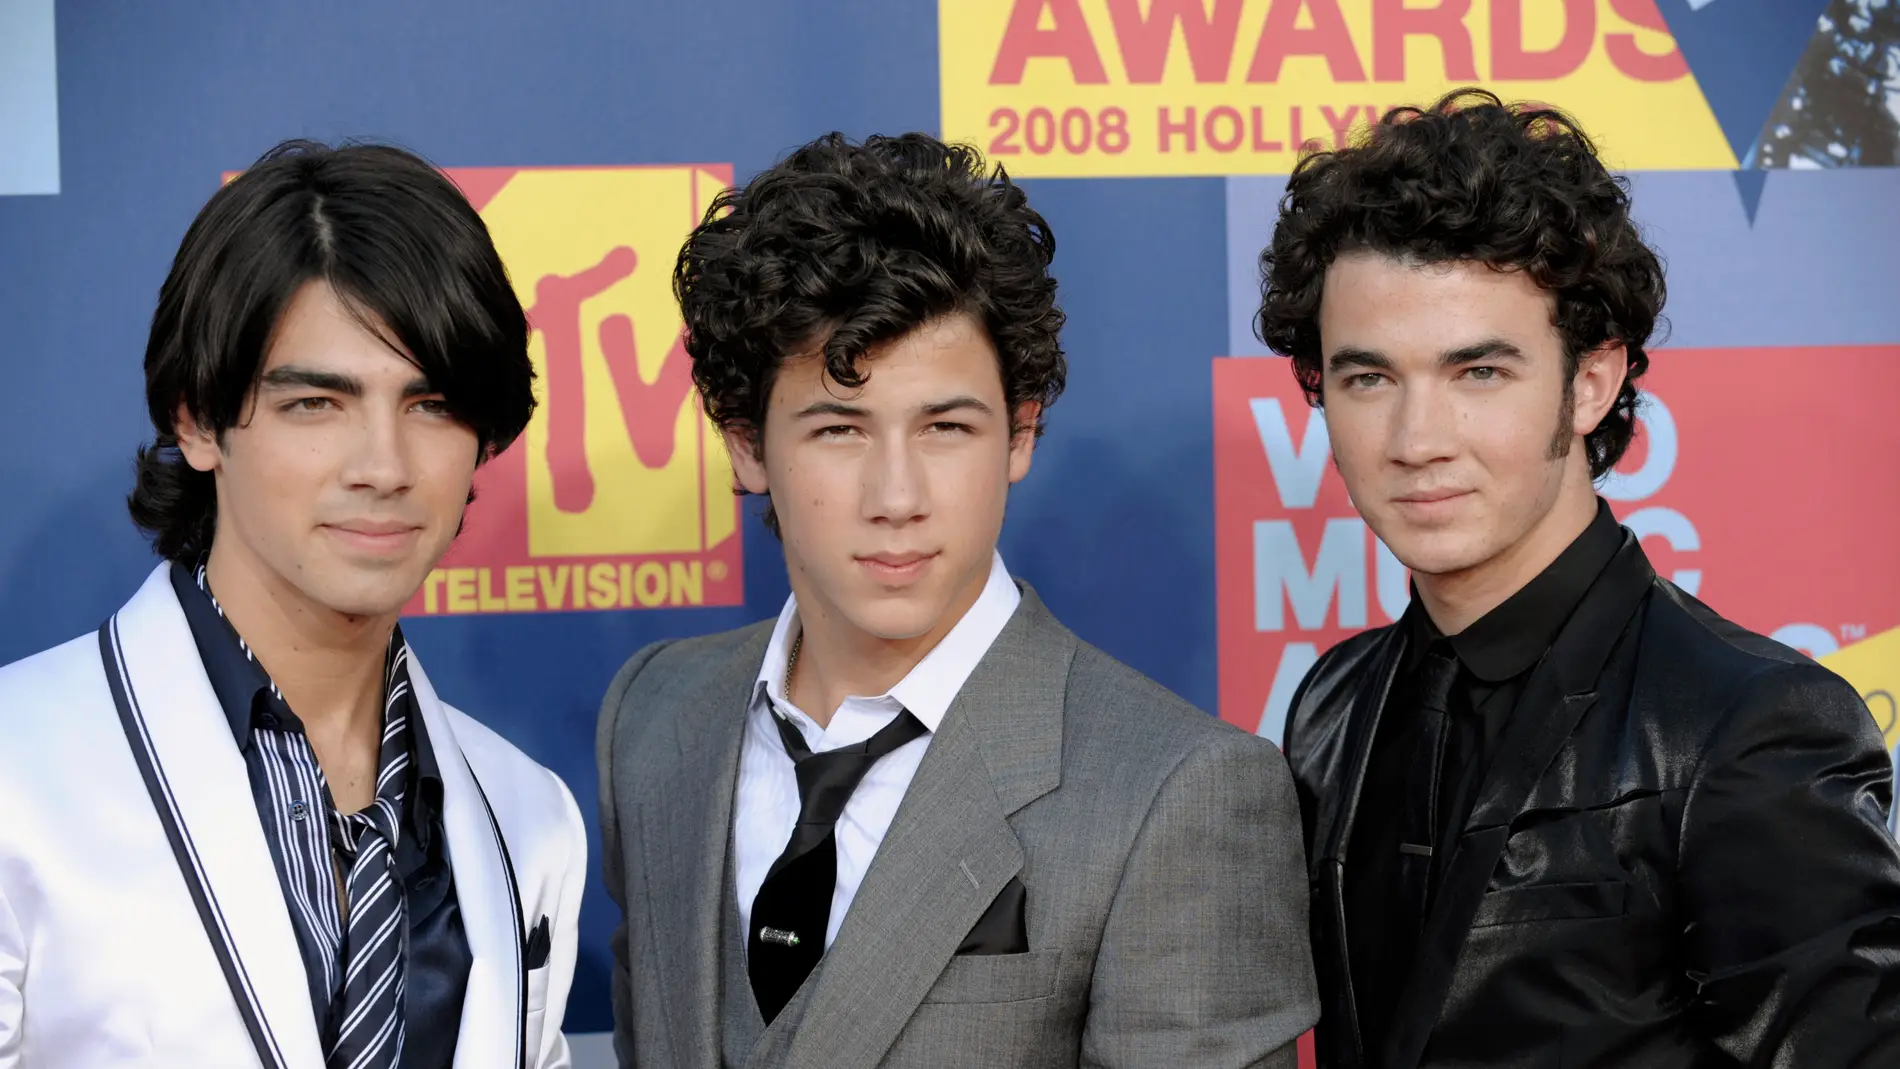 Así eran los Jonas Brothers en 2008